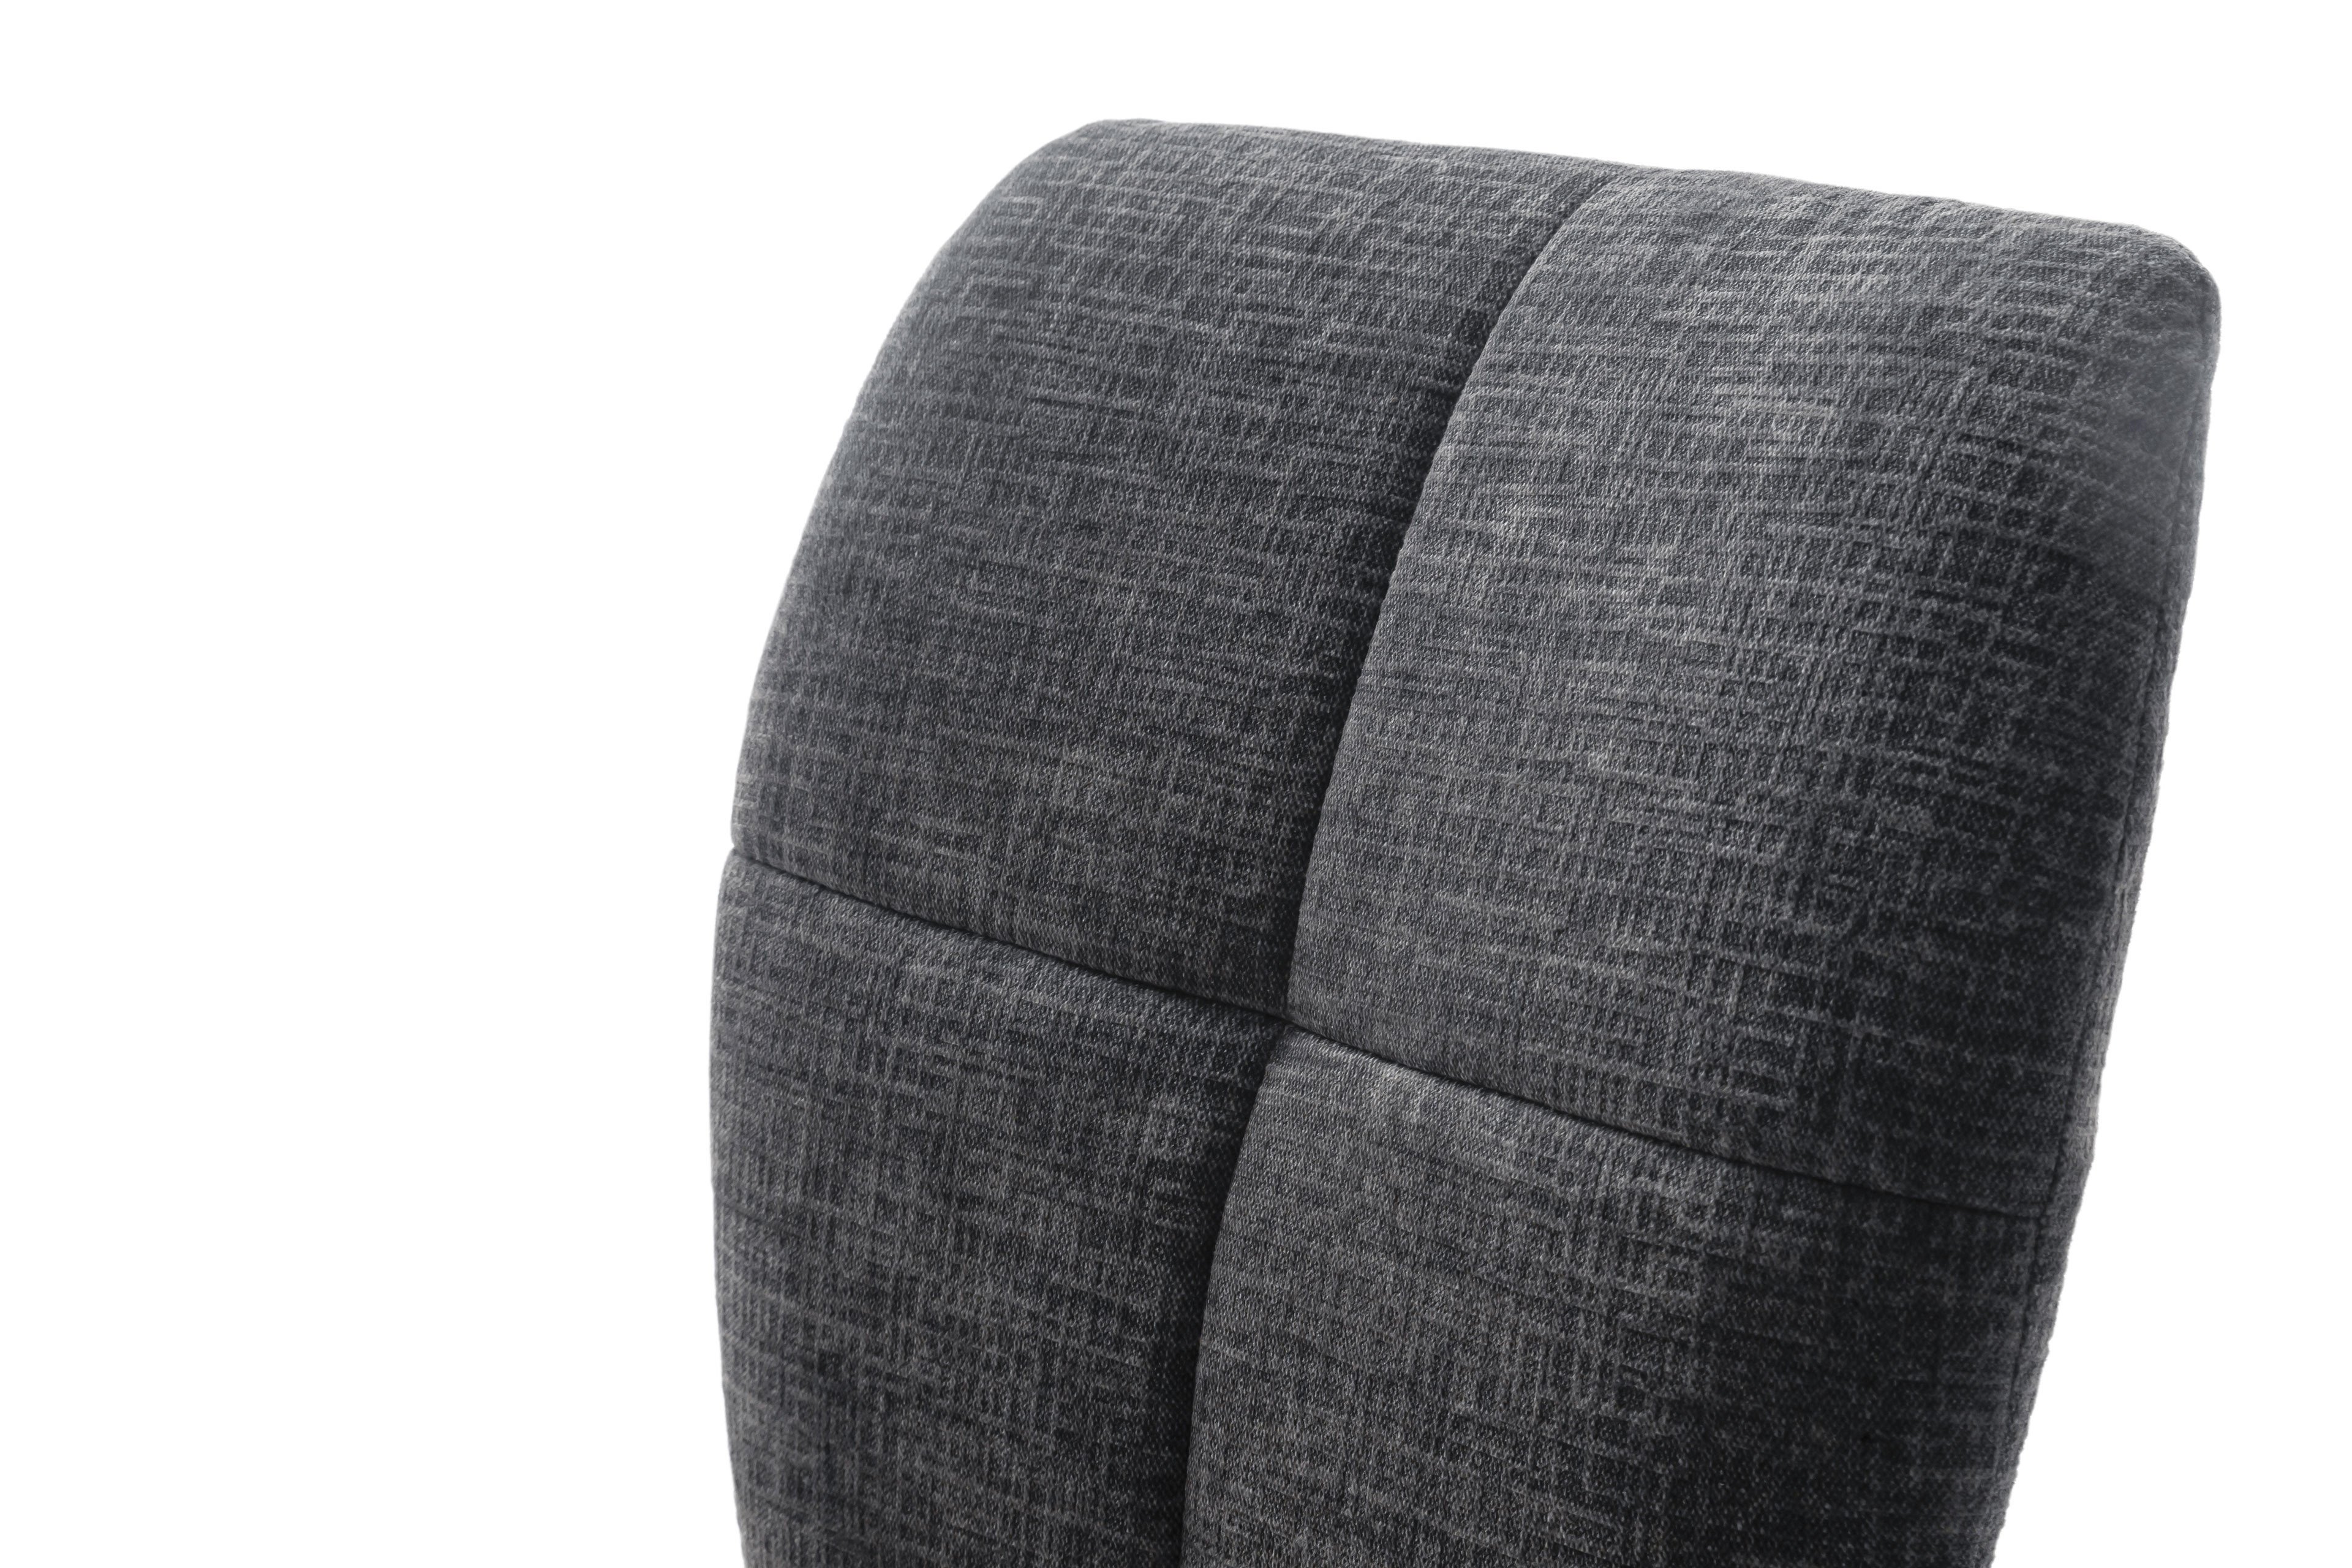 Stuhl Kea von MCA furniture mit schwarzem Stativgestell | Möbel Letz - Ihr  Online-Shop